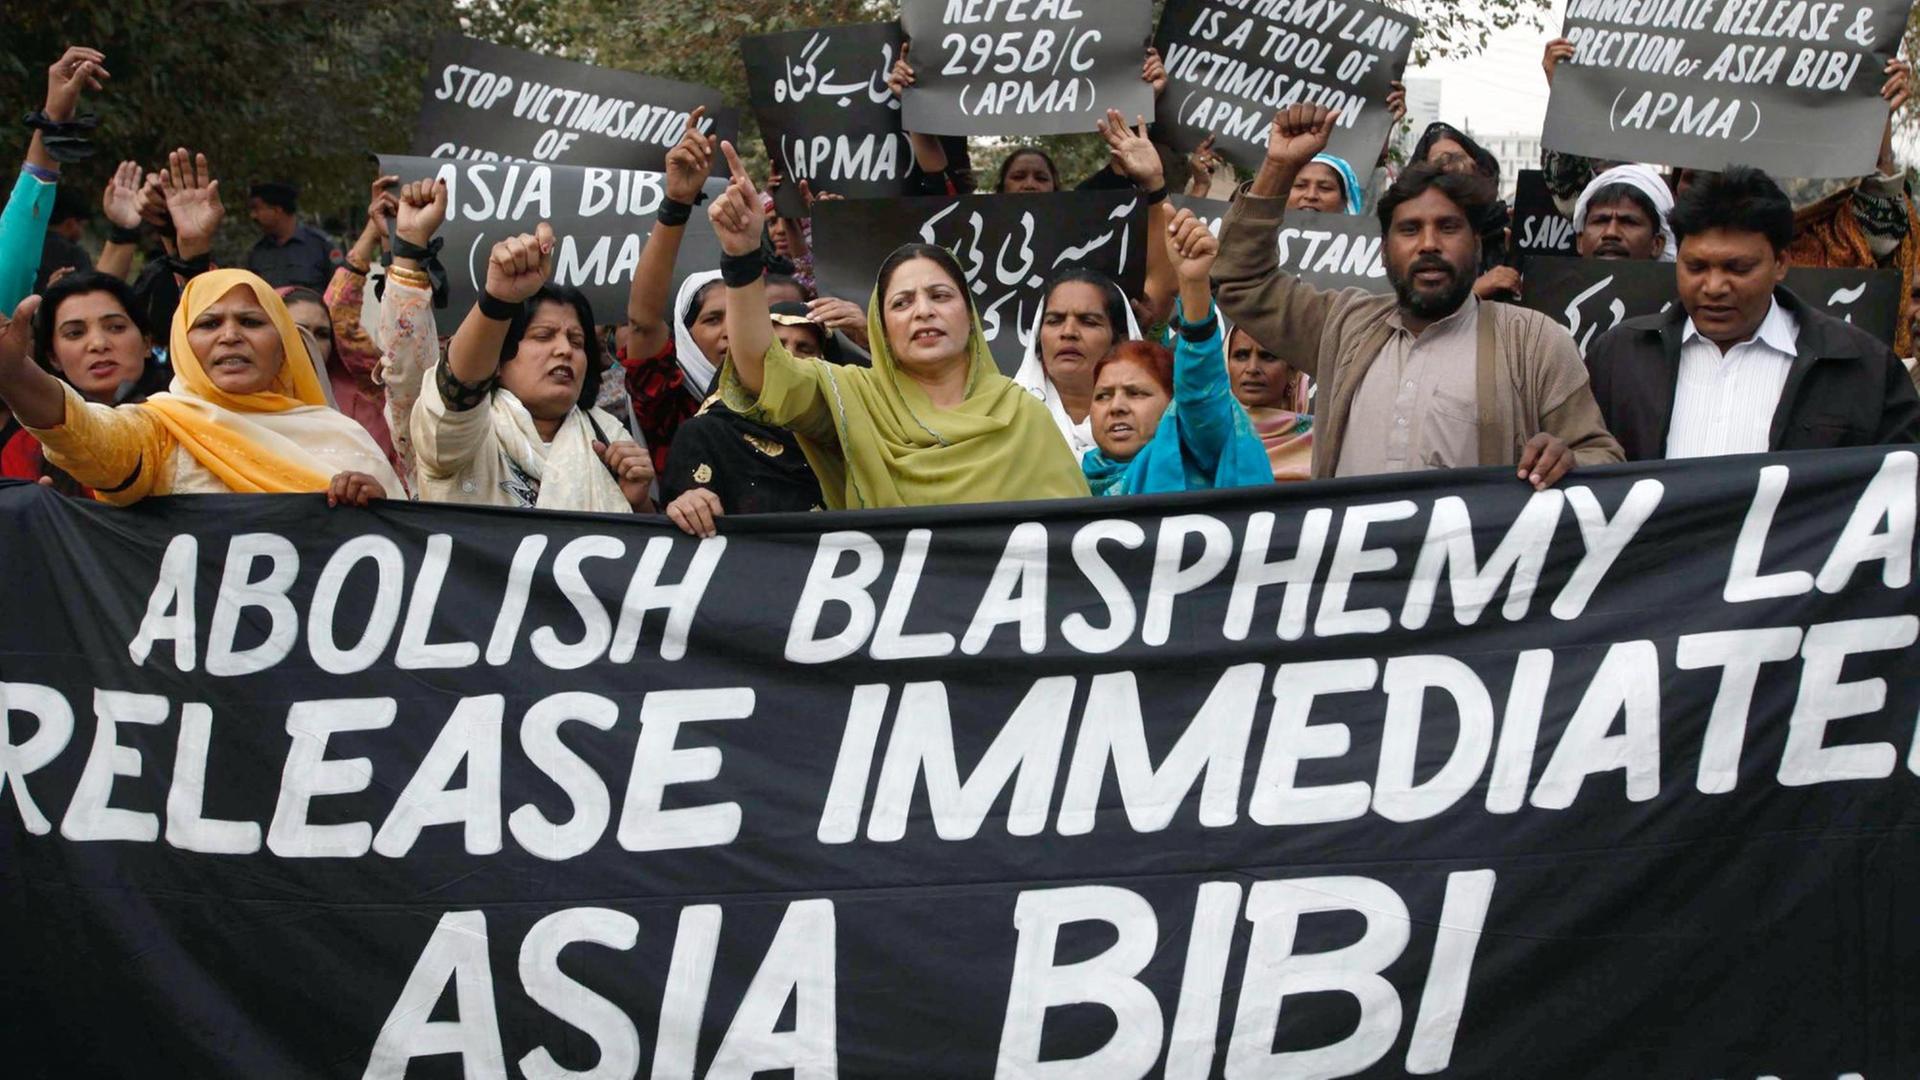 Unterstützer des pakistanischen Minderheiten-Verbandes APMA bei einer Demonstration für die Freilassung von Asia Bibi im Jahr 2010